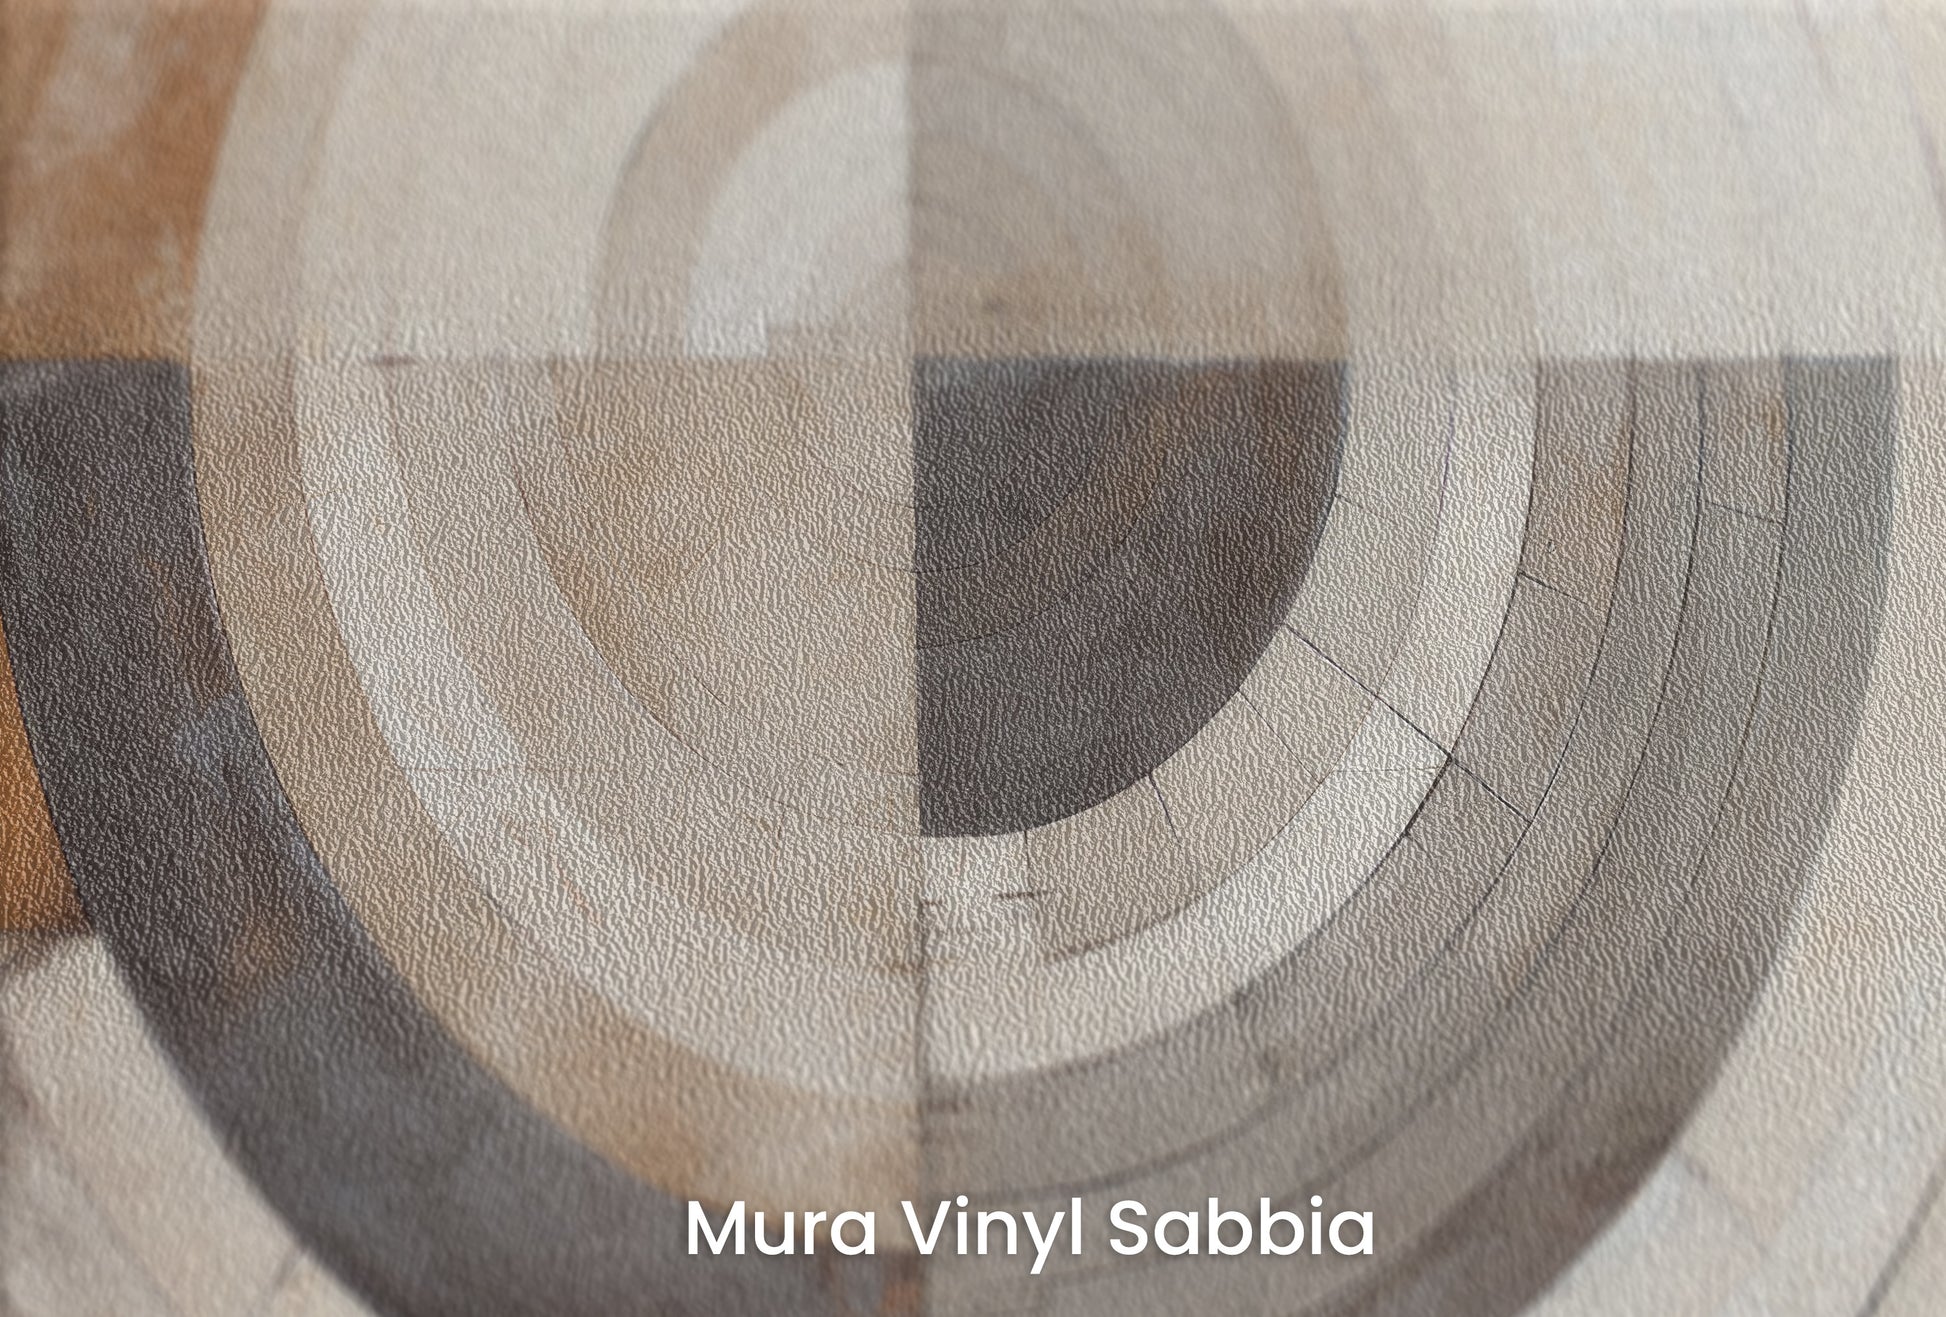 Zbliżenie na artystyczną fototapetę o nazwie MONOCHROME ECLIPSE ABSTRACTION na podłożu Mura Vinyl Sabbia struktura grubego ziarna piasku.